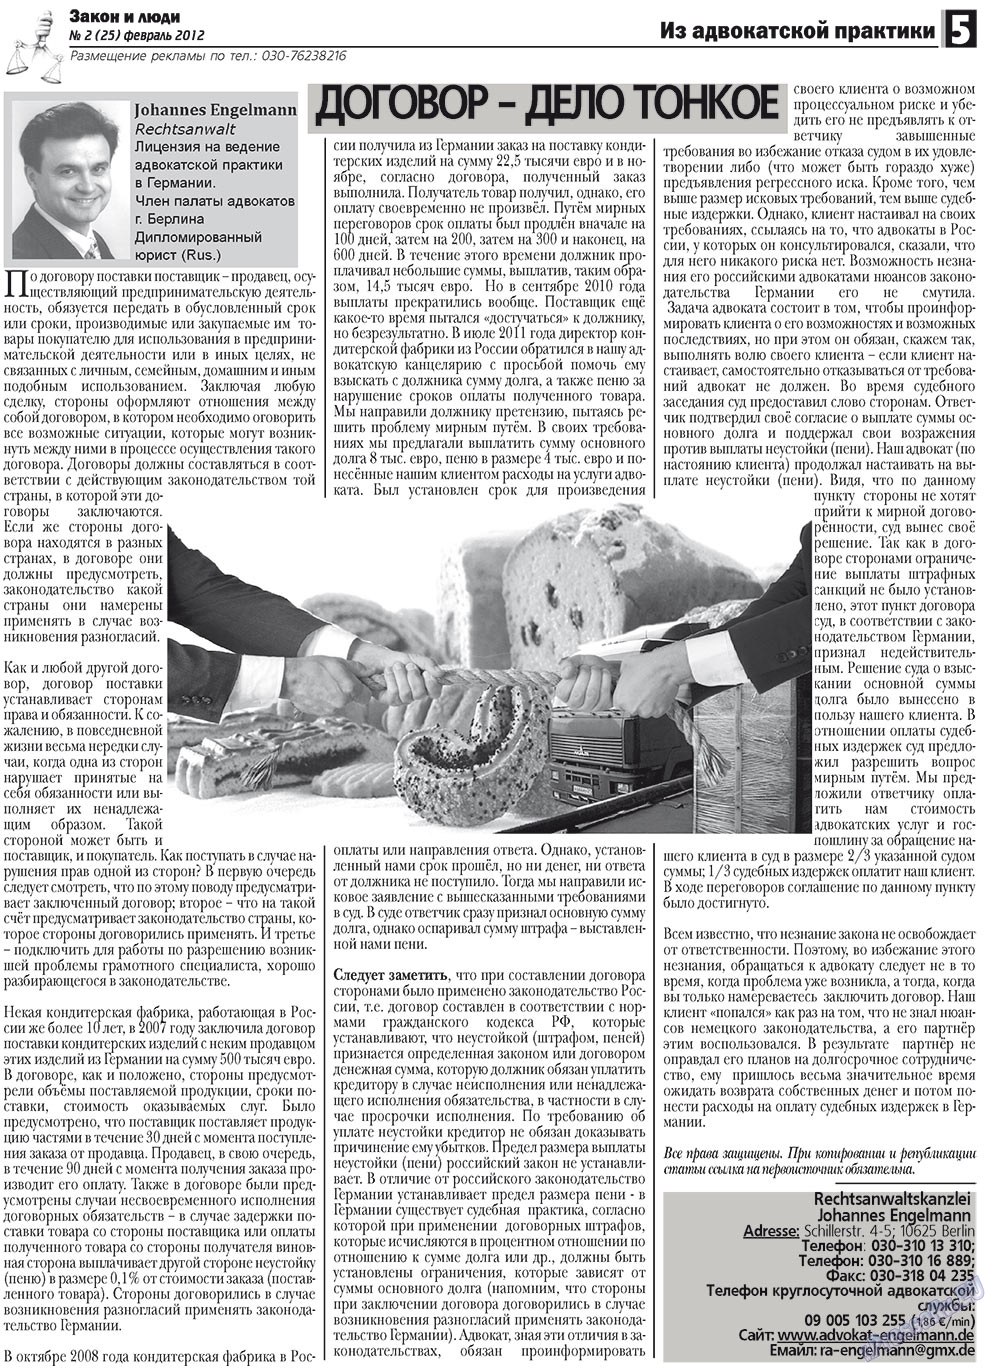 Закон и люди, газета. 2012 №2 стр.5